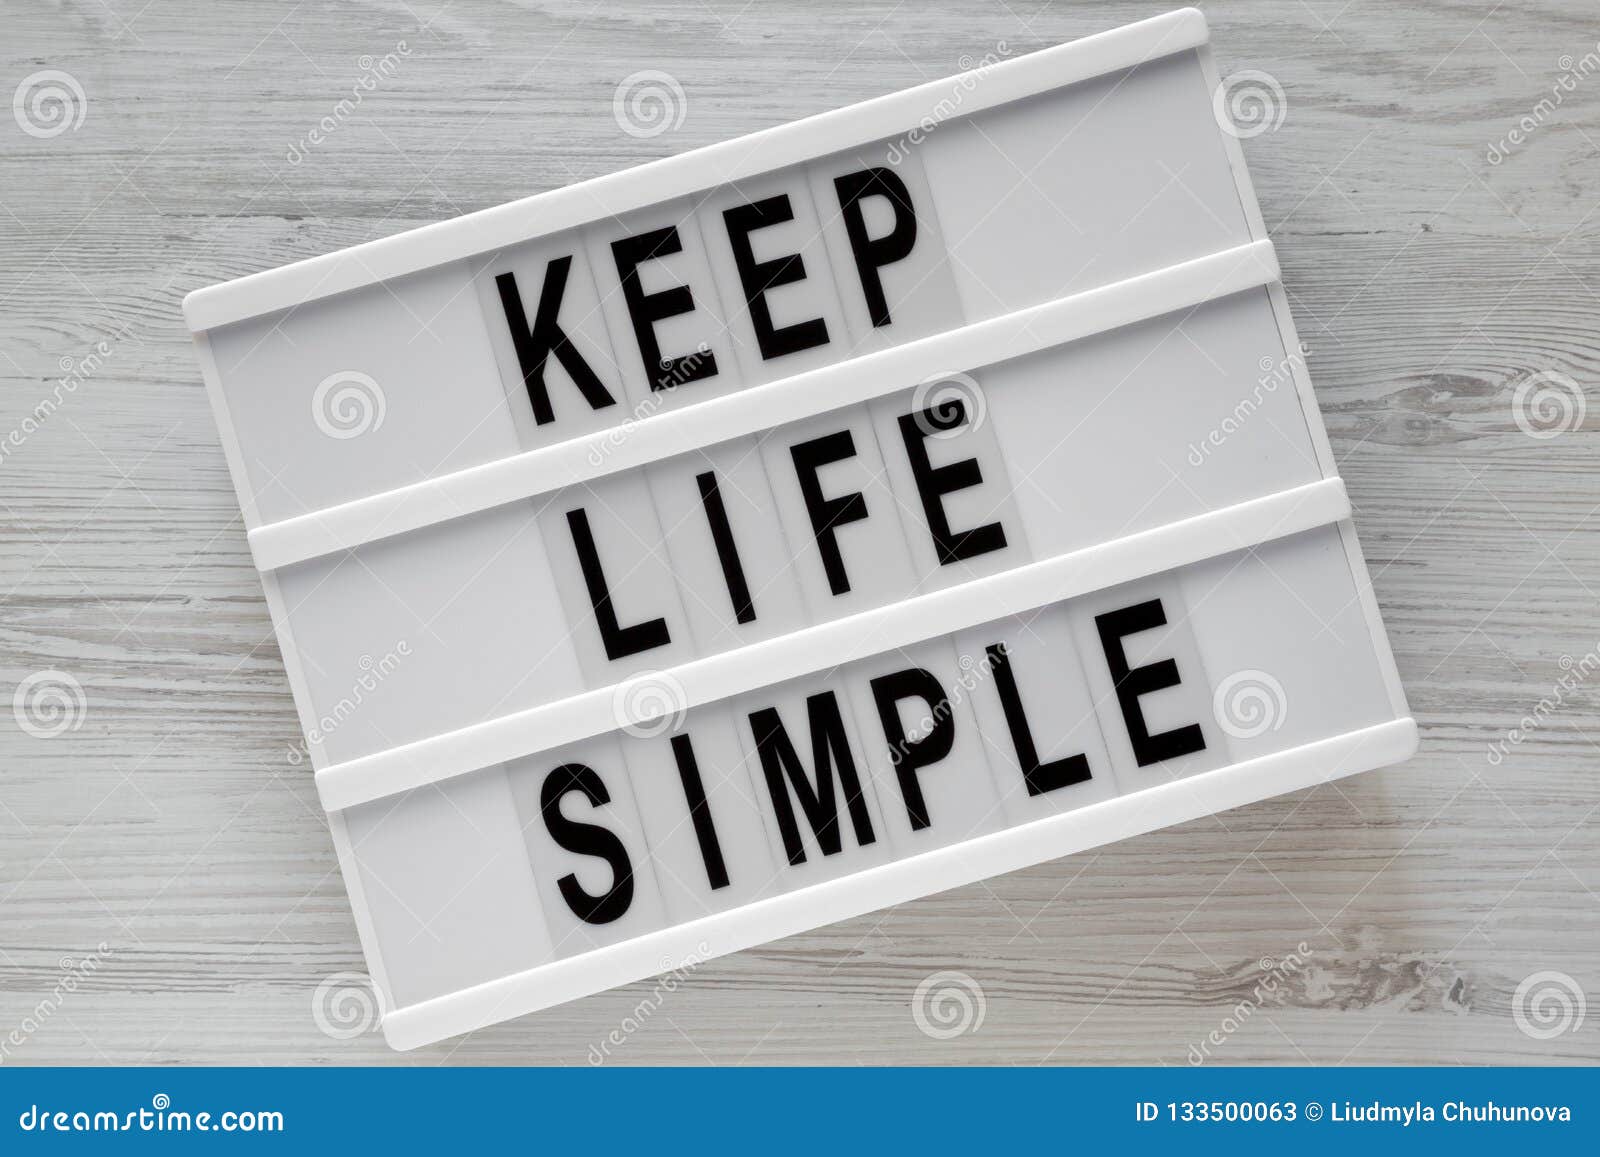 Keep flat. Keep Life. Keep Life simple. Life is simple наклейка. Keep Life simple перевод на русский.